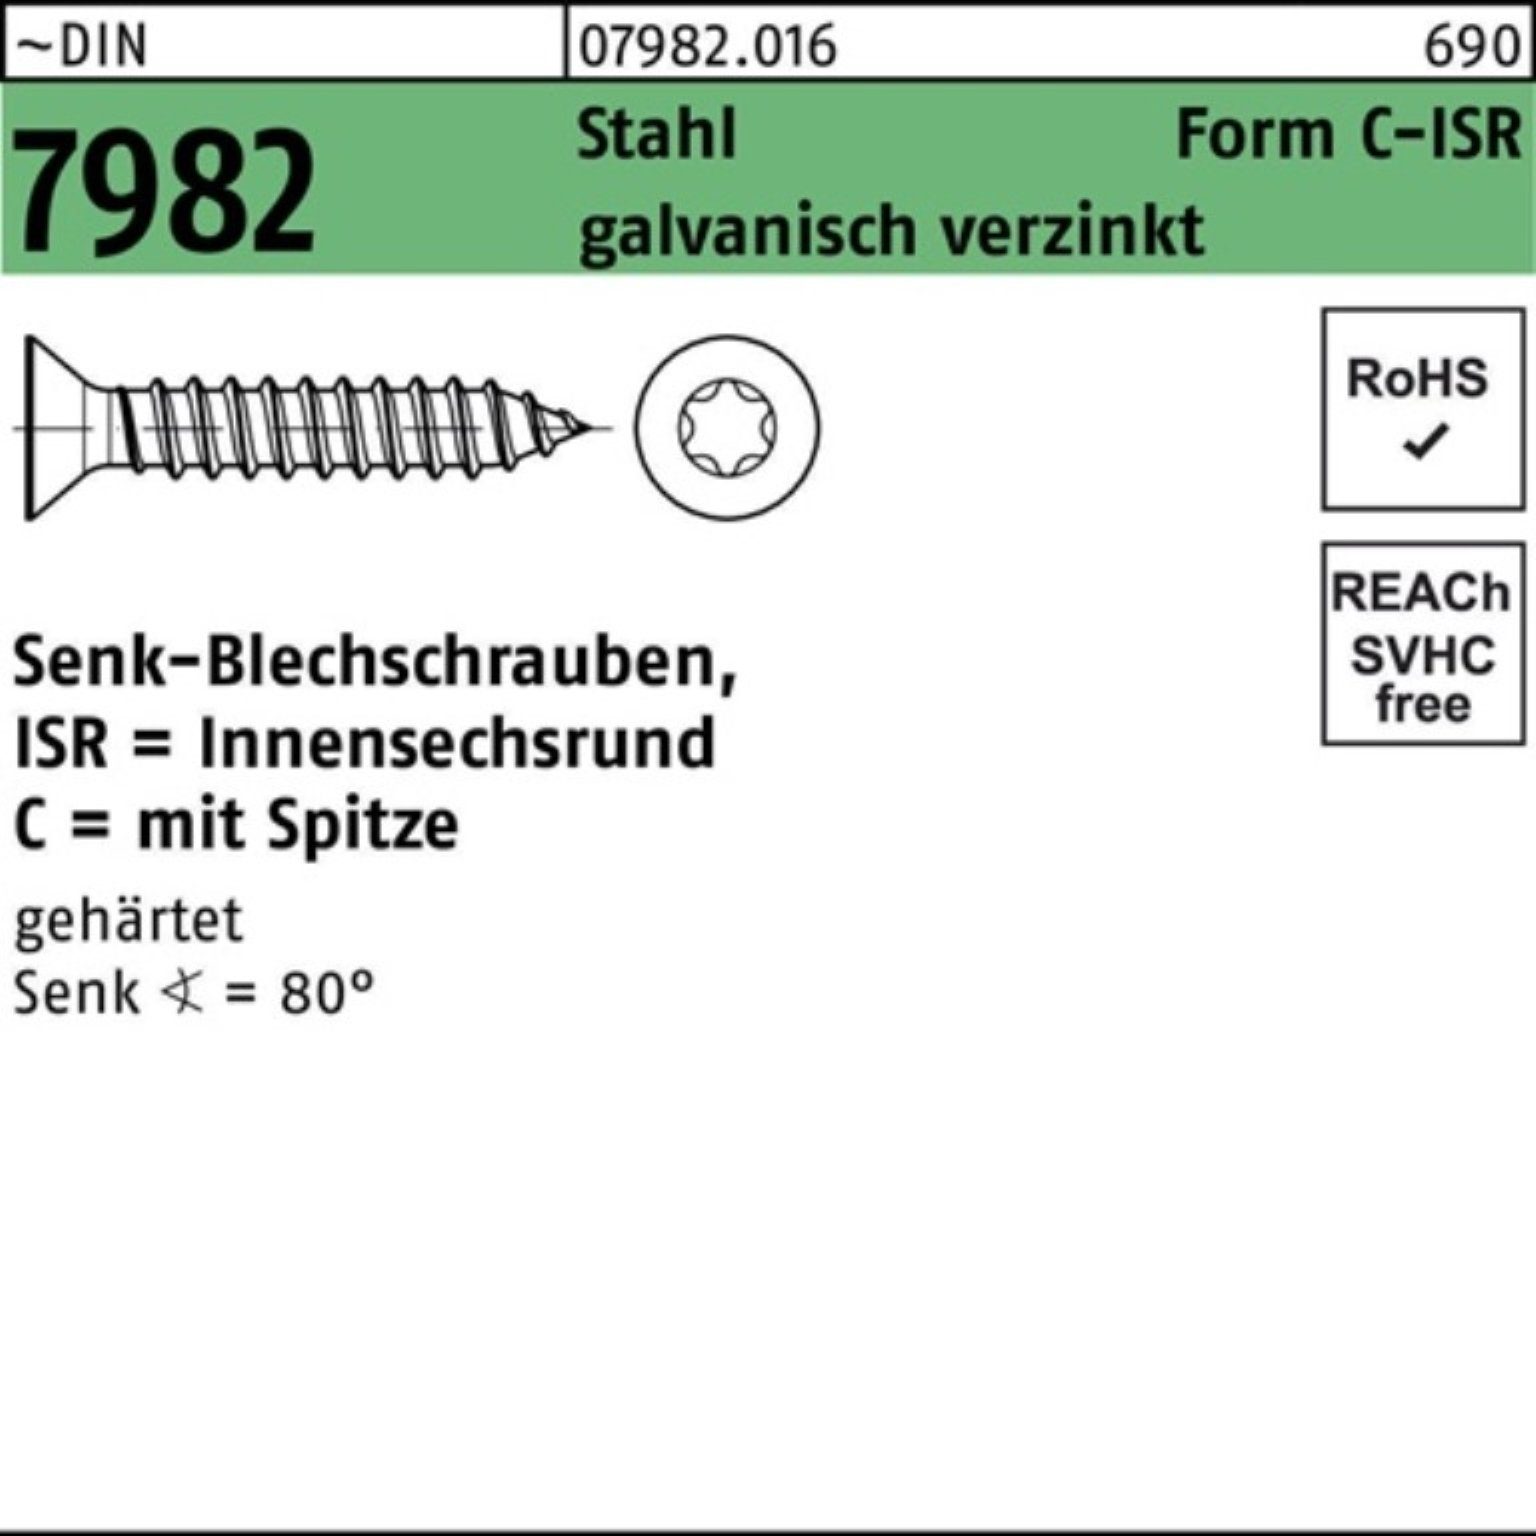 Reyher Schraube 250er Pack Senkblechschraube g 6,3x25 ISR/Spitze Stahl 7982 DIN -C-T30